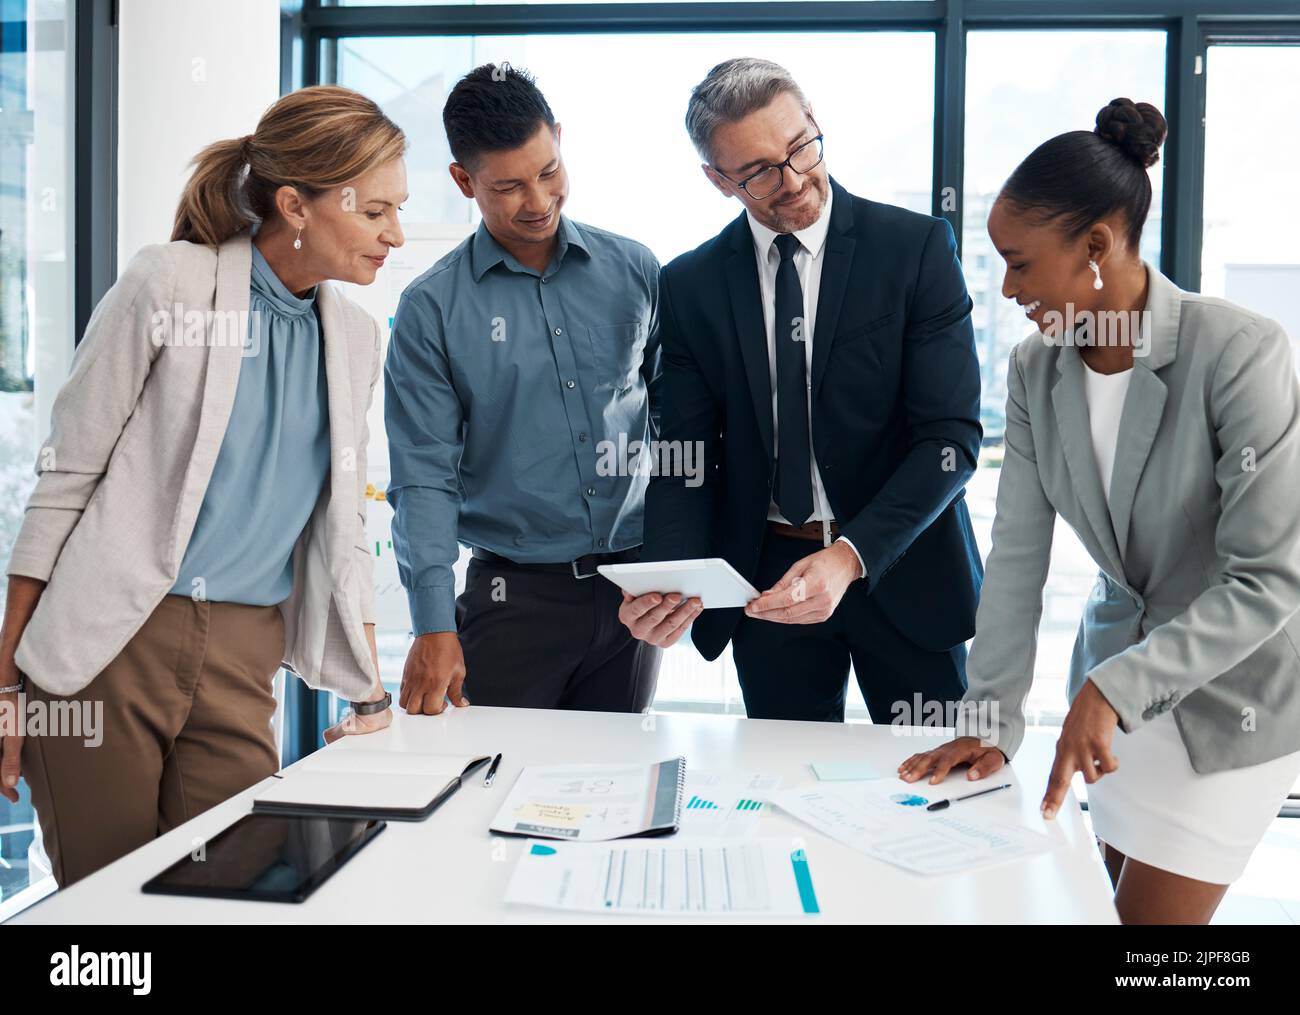 Führungsvision, Zusammenarbeit und Teamwork eines Geschäftsteams in einem Büromeeting. Unternehmensleitung, die an einer Rechnungslegung arbeitet Stockfoto